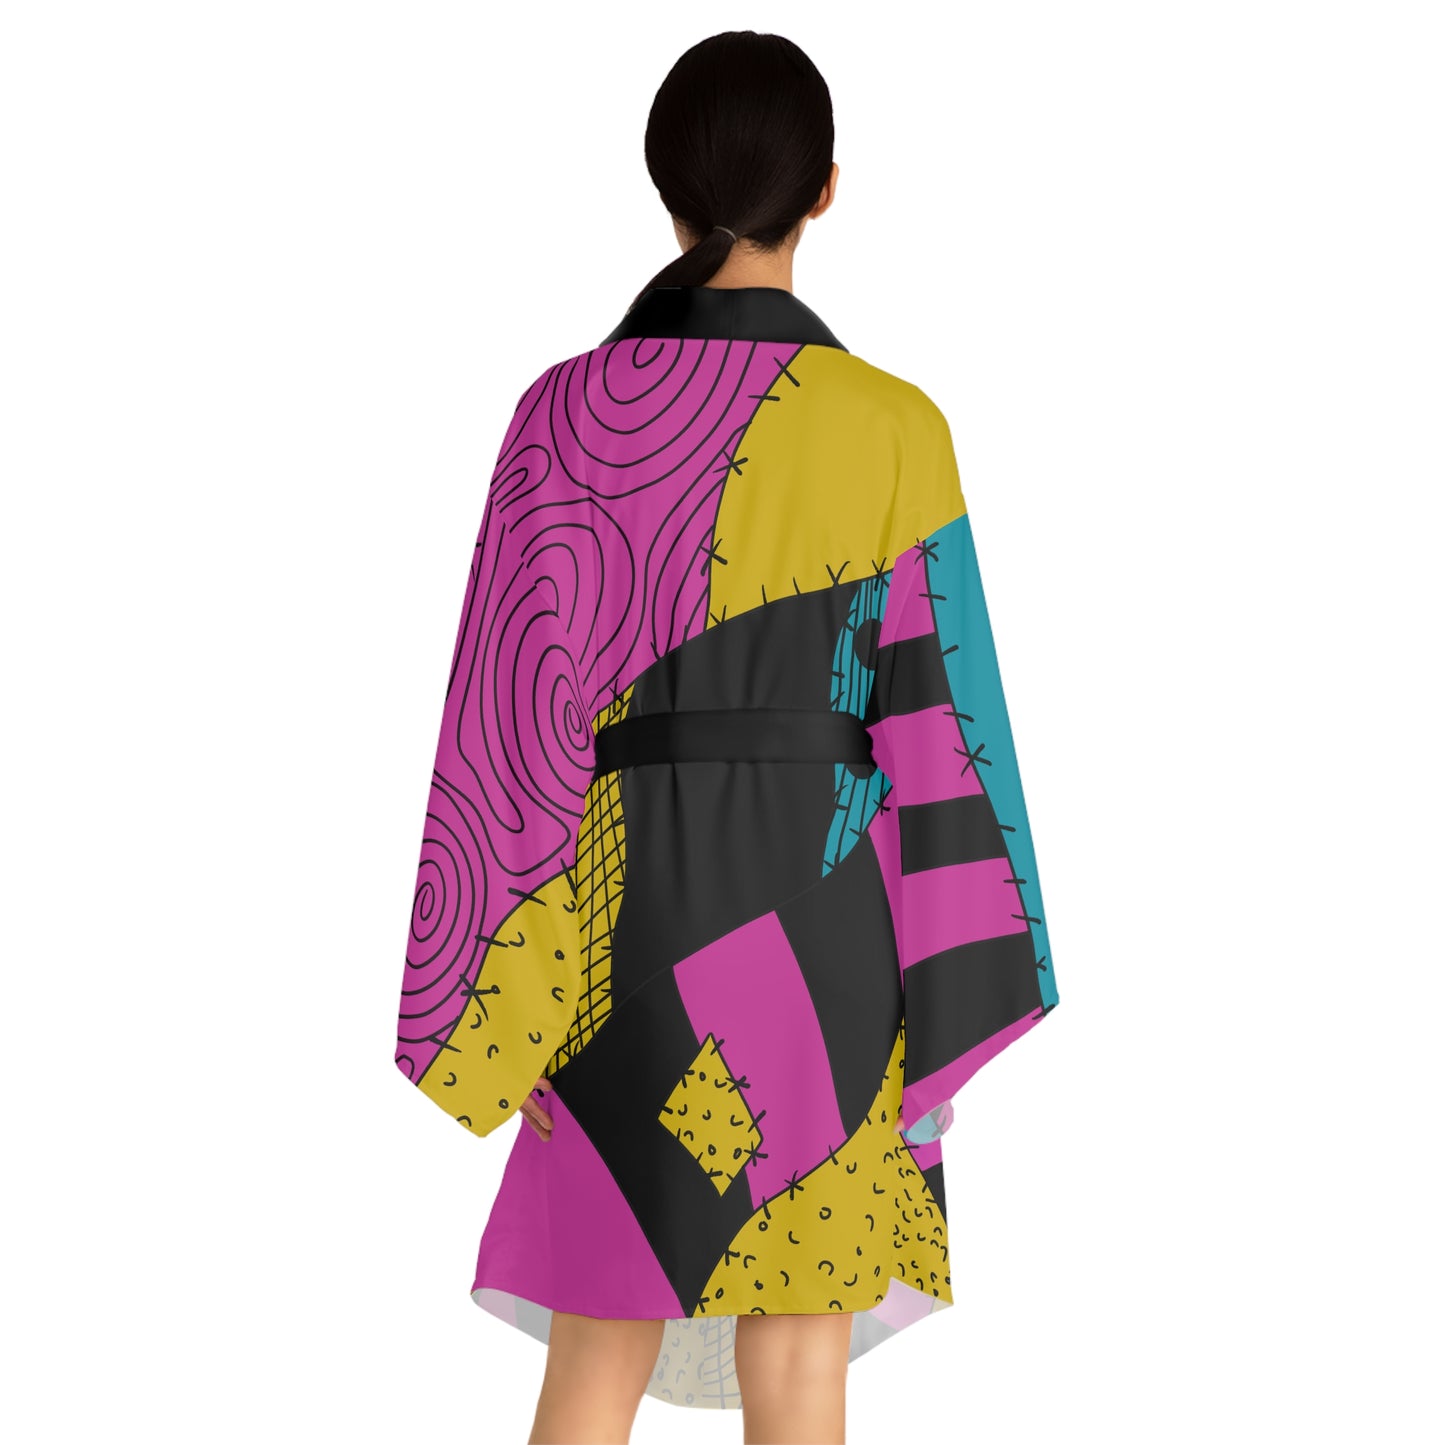 Sally Long Sleeve Kimono Robe